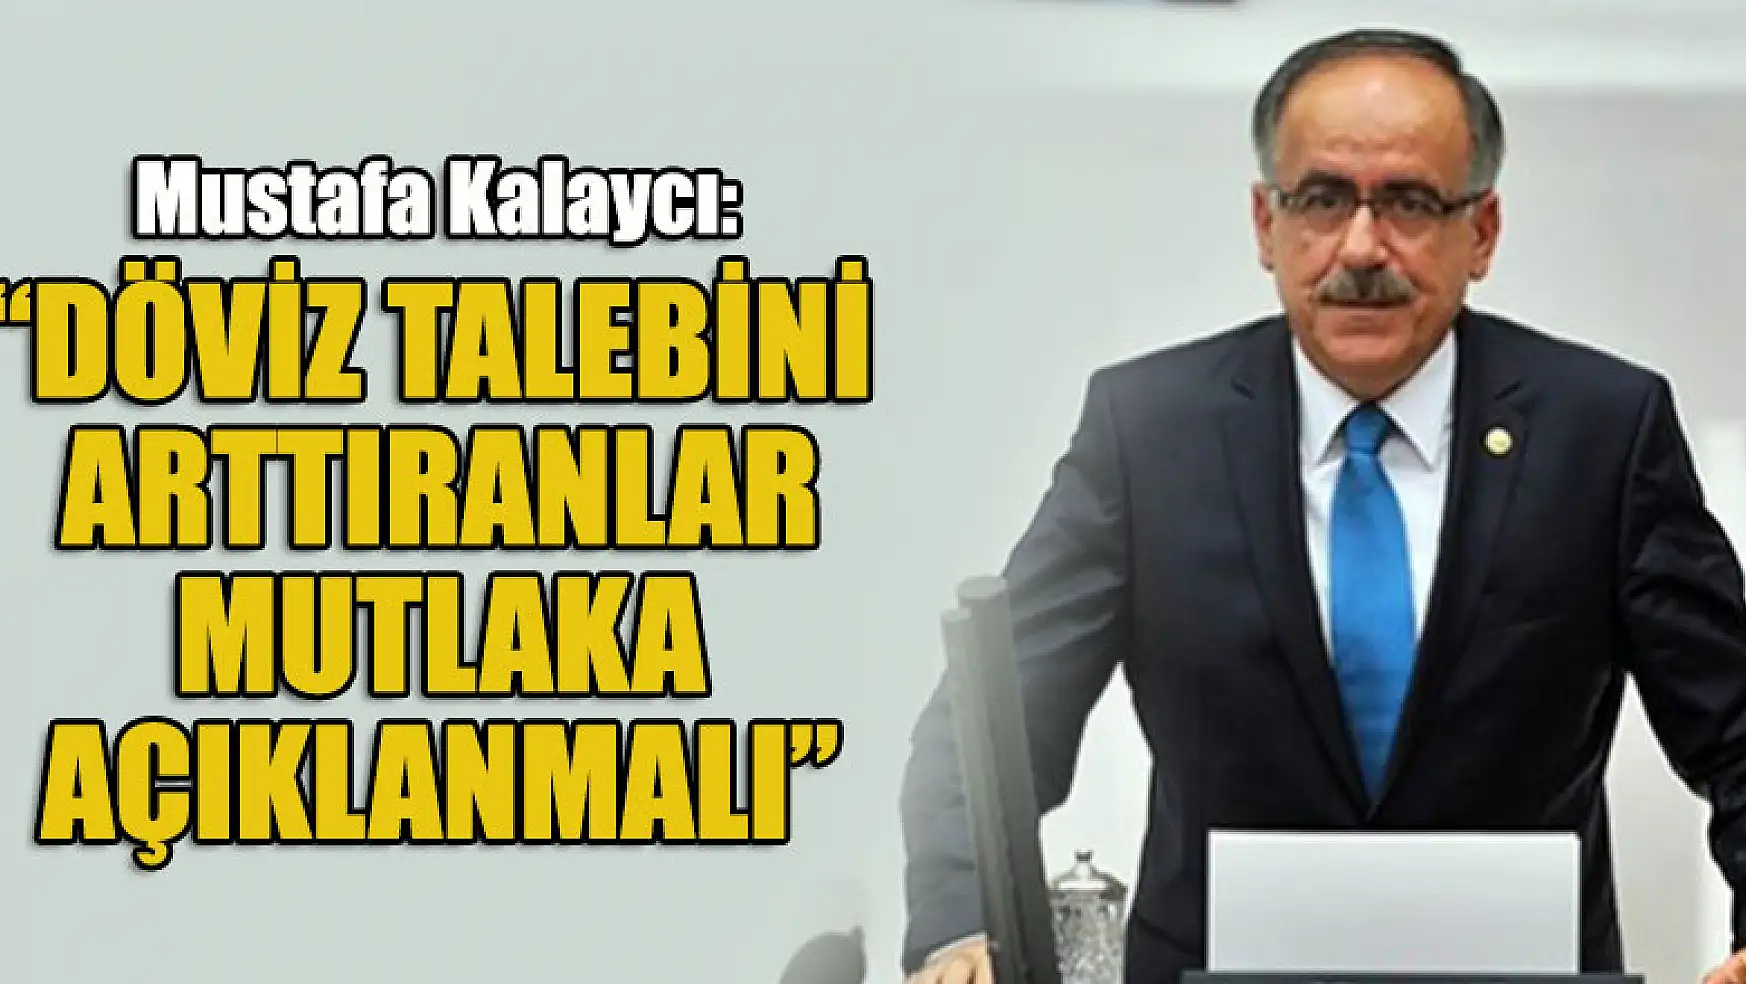 Mustafa Kalaycı: Döviz talebini arttıranlar mutlaka açıklanmalı